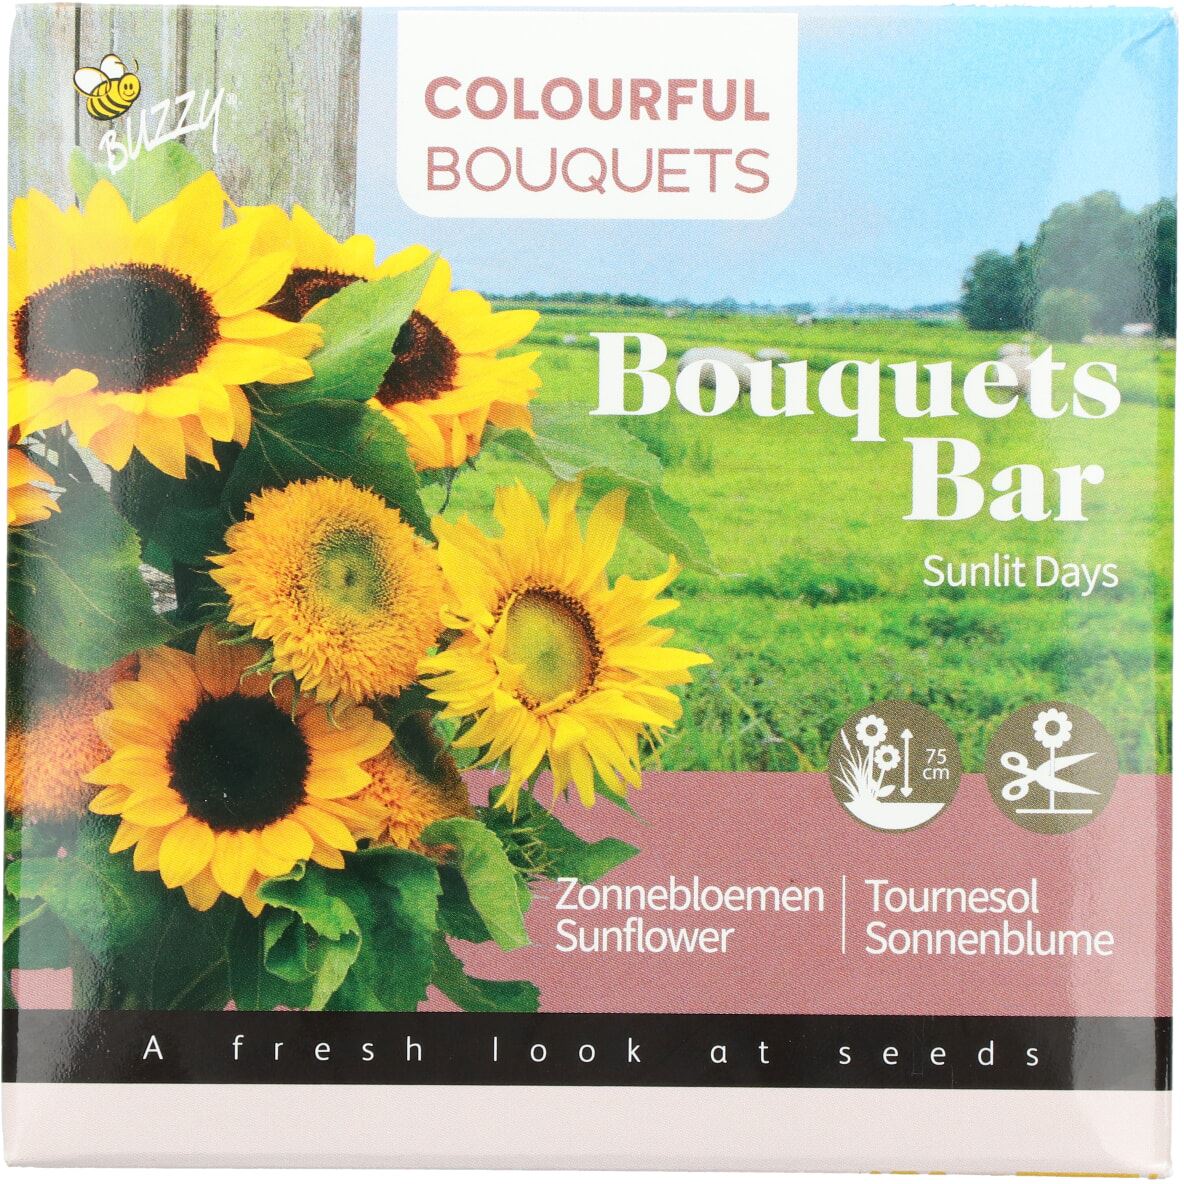 Buzzy-Bouquets-Bar-Sunlit-Days-Zonnebloemen-8-